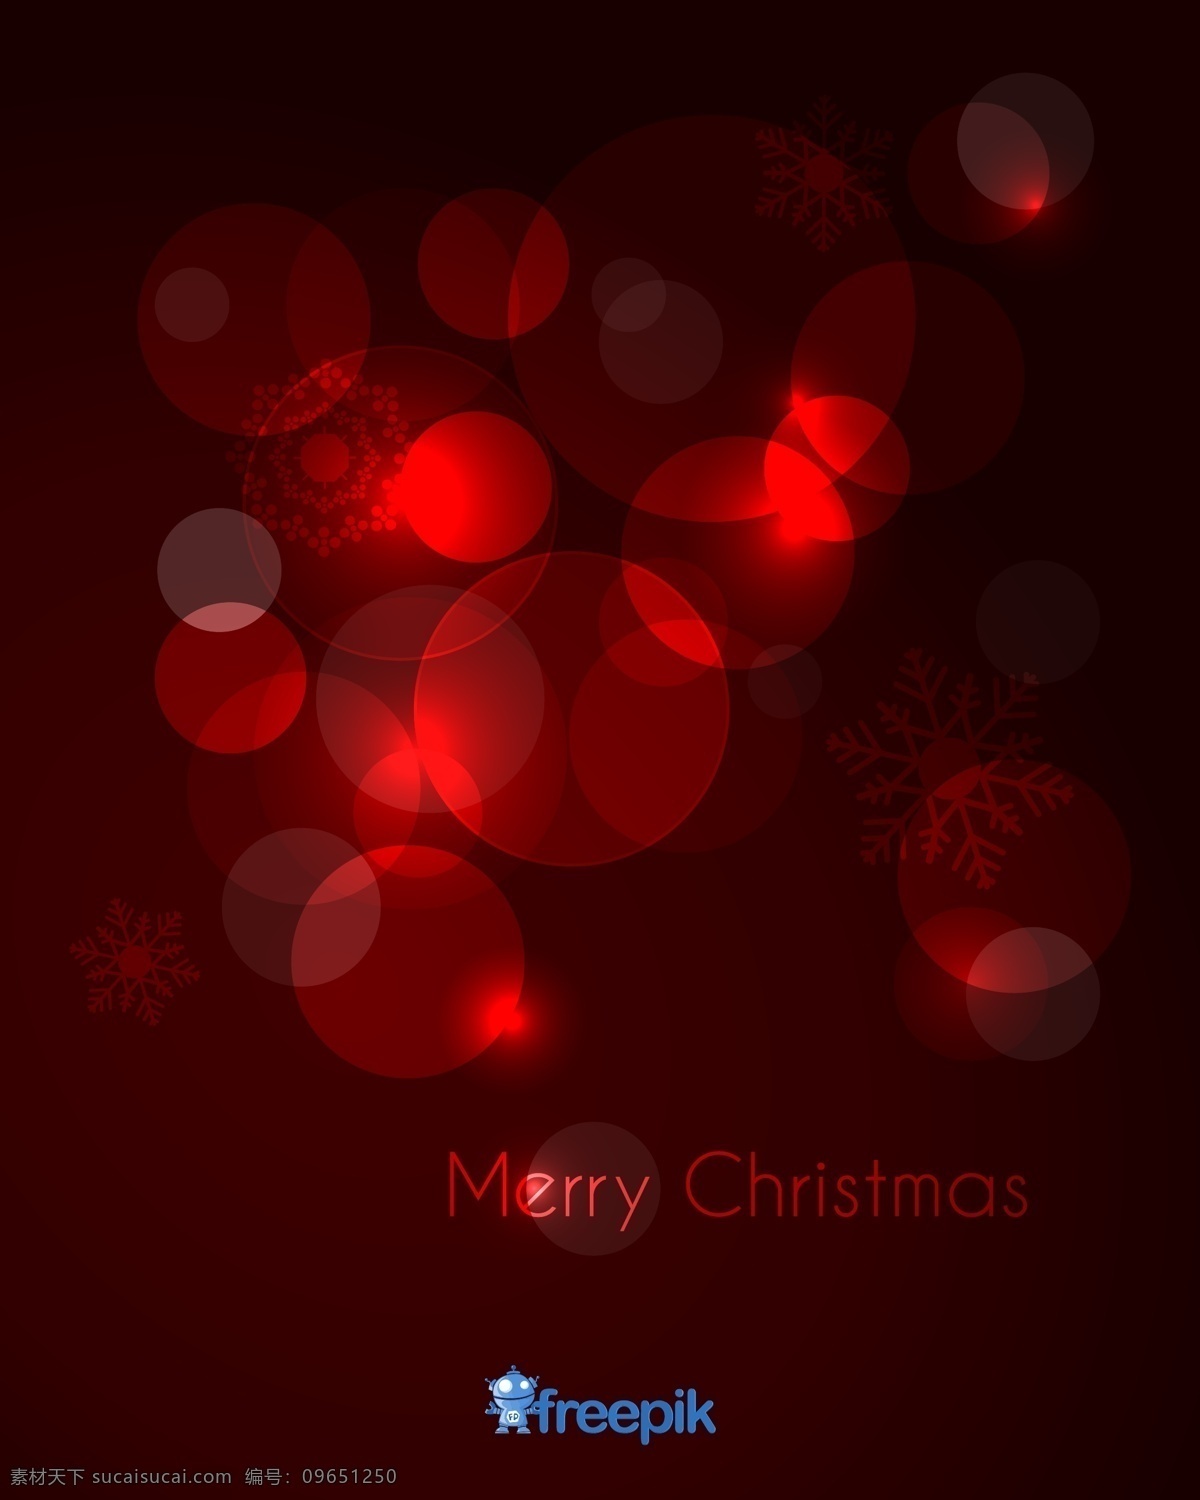 圣诞贺卡 红 snowfalkes 气球 圣诞卡 圣诞快乐 红色 雪花 贺卡 明信片 问候 快乐 垂直 黑色